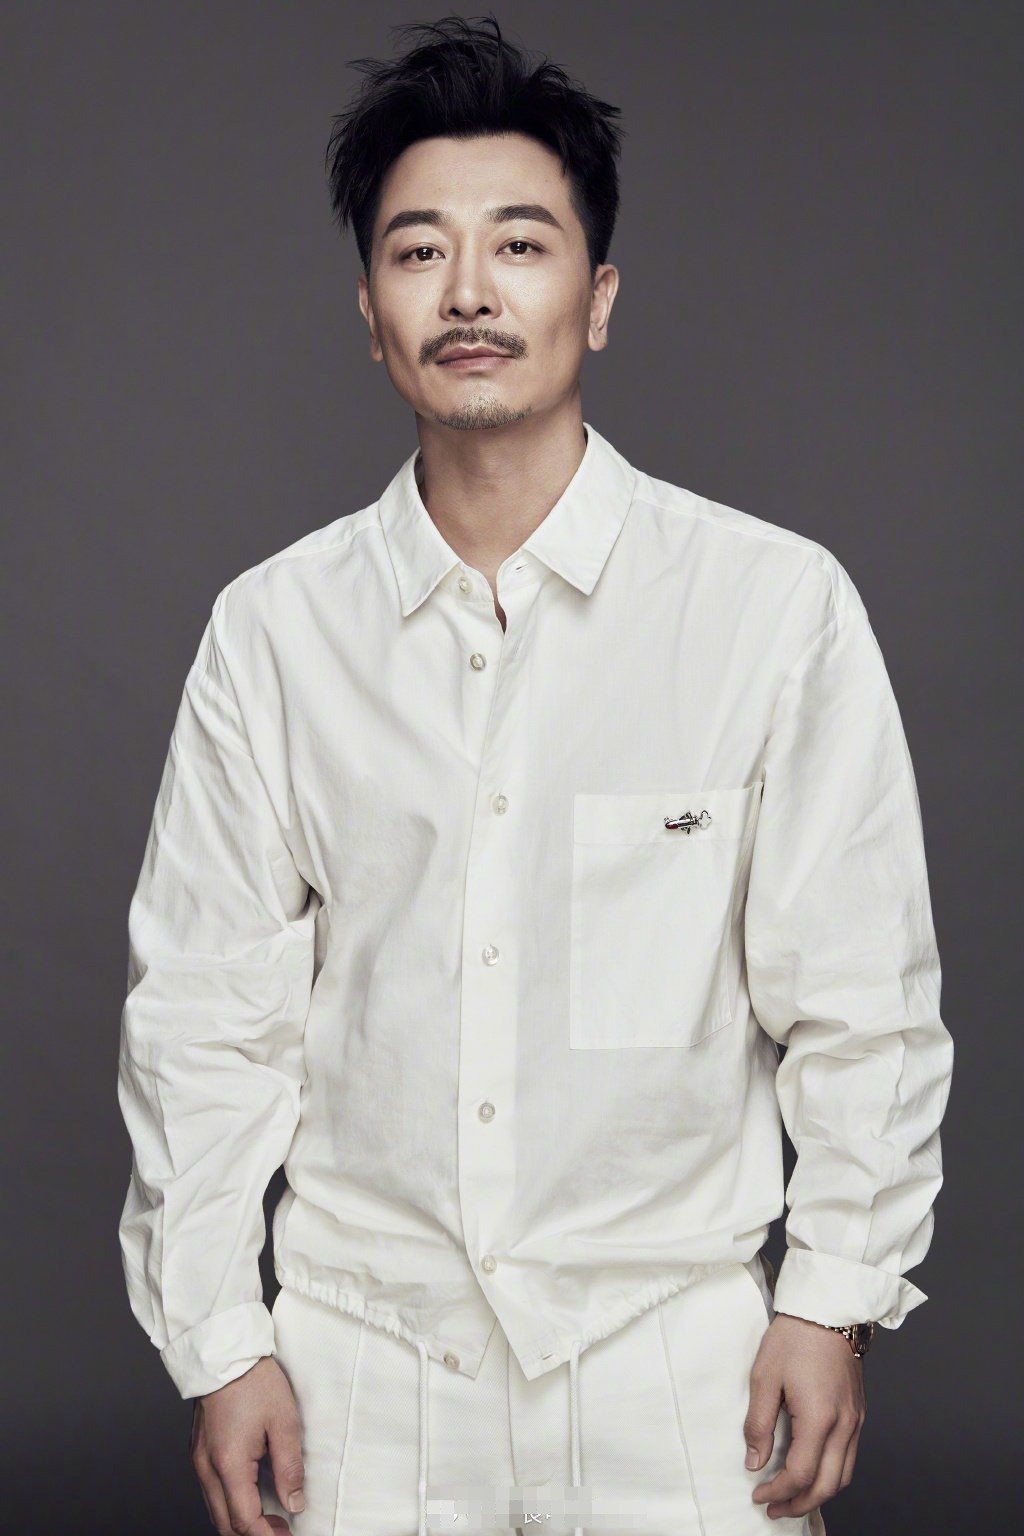 吴樾曾在2010年,出演张纪中版的电视剧《西游记》中扮演孙悟空,广受